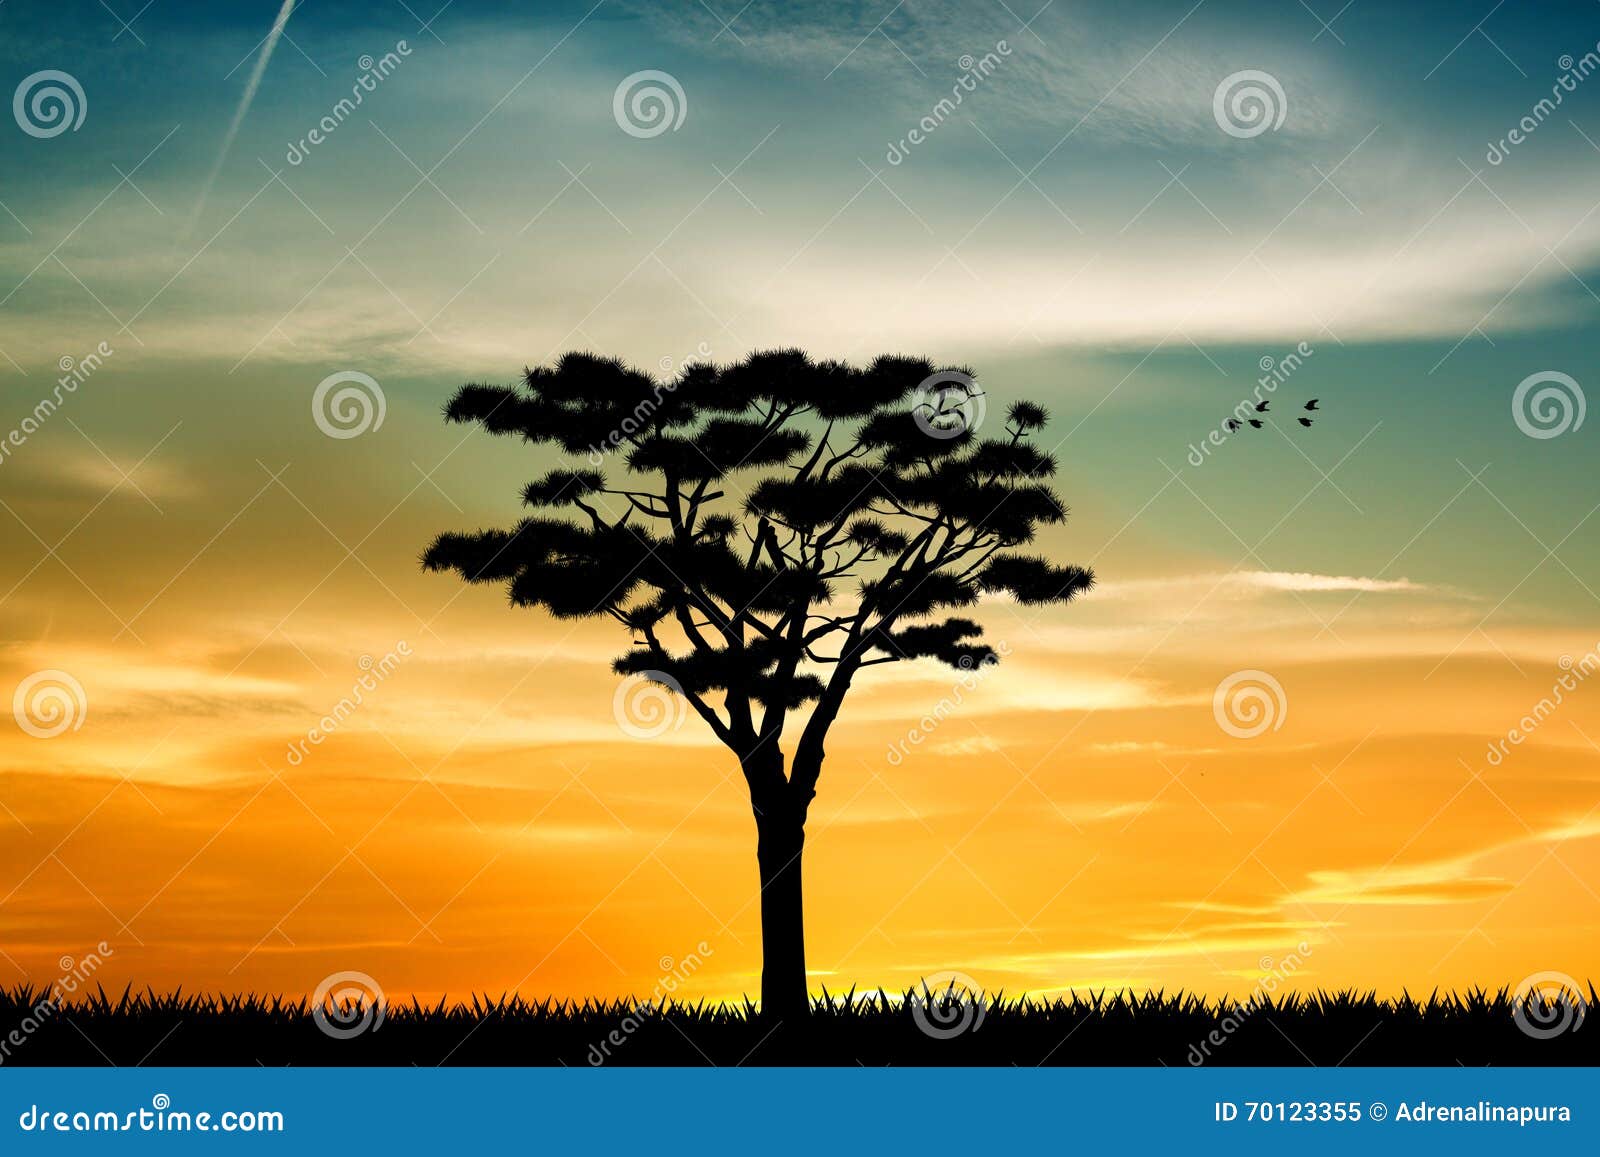 Drzewo życie przy zmierzchem. Ilustracja drzewo przy zmierzchem